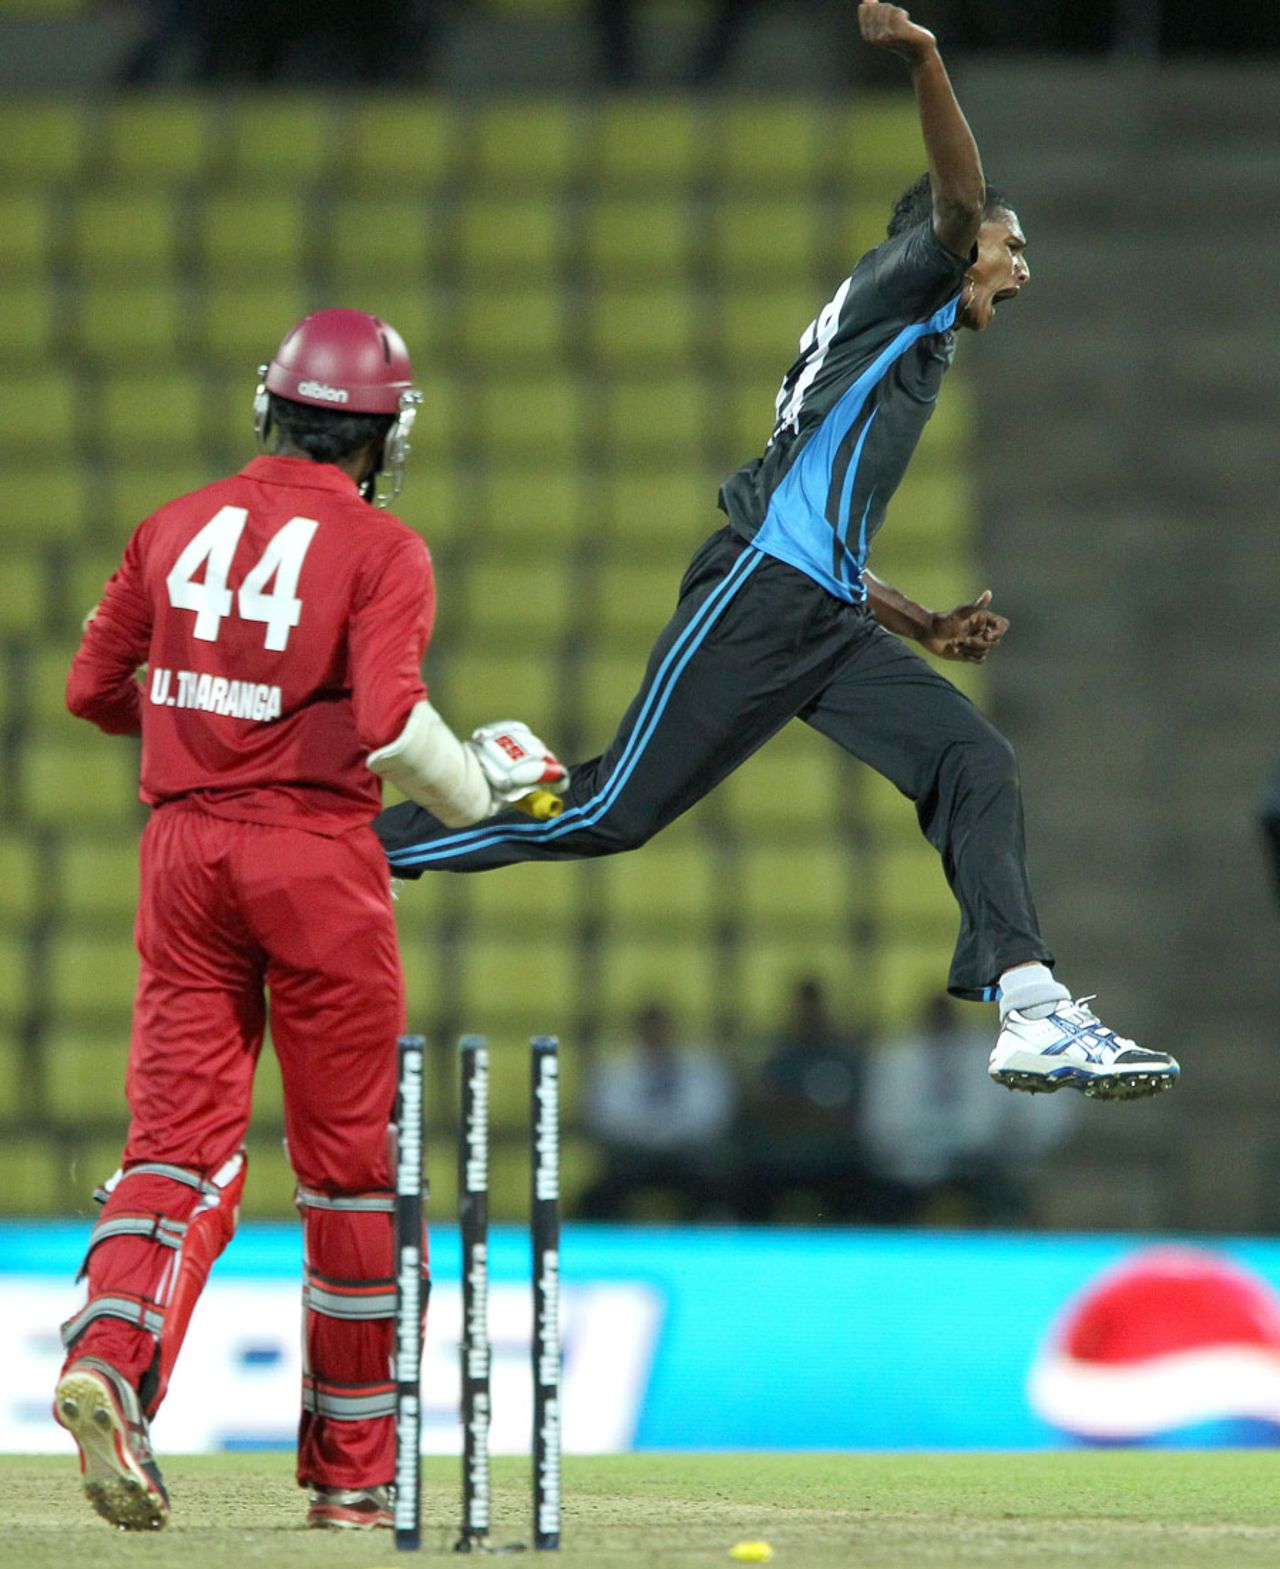 Chathuraga Kumara finished with three wickets,Wayamba United v Uthura Next, SLPL, Pallekele, August 17, 2012